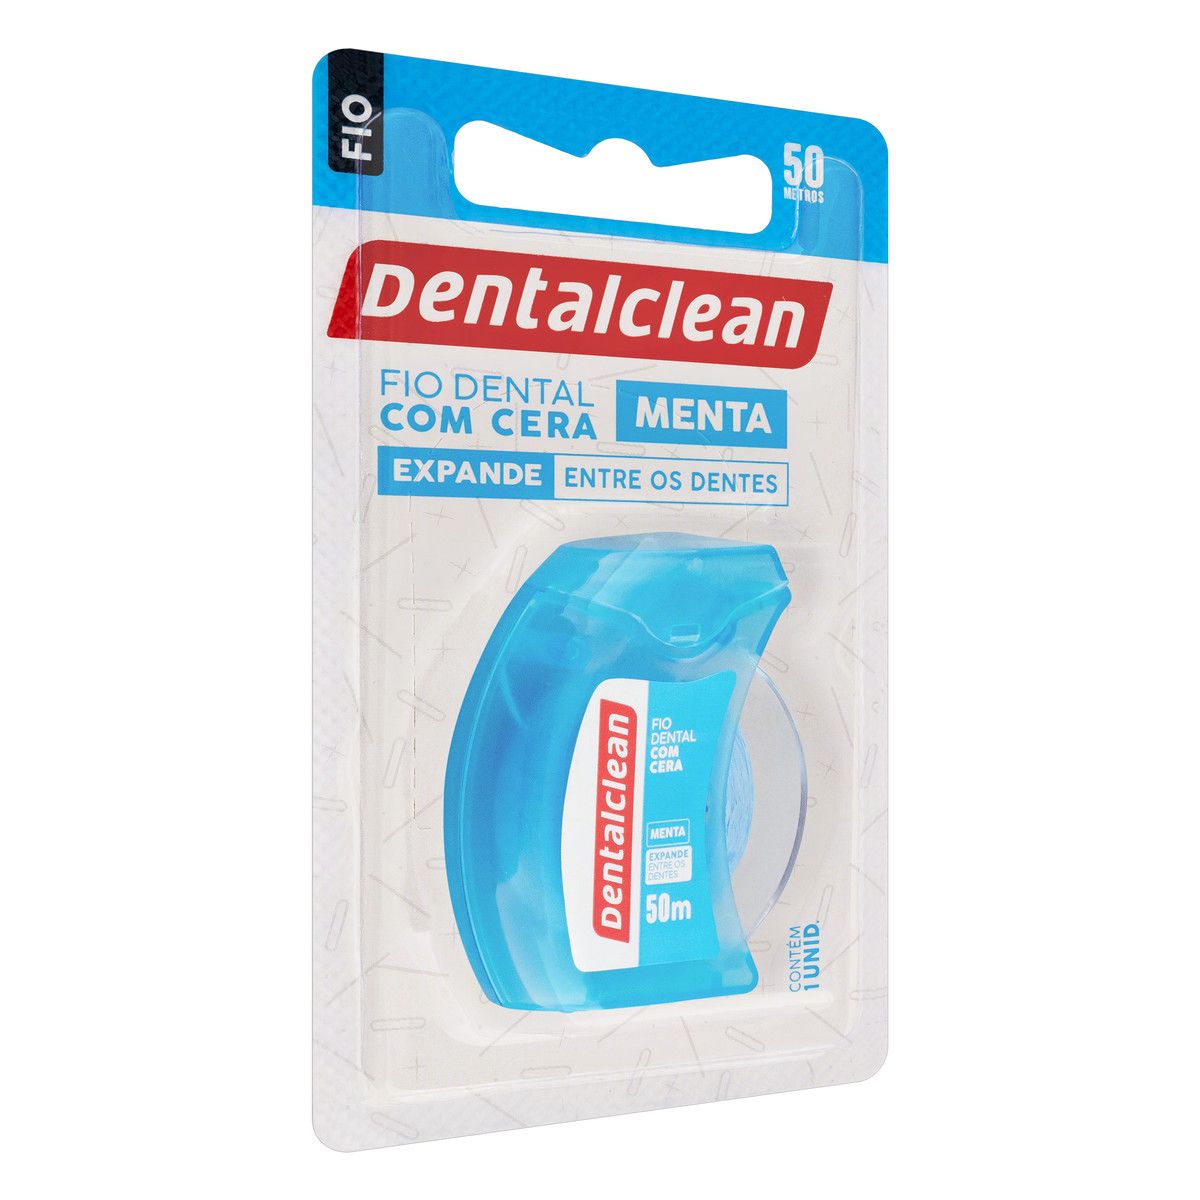 Fio Dental com Cera Menta Dentalclean 50m image number 4